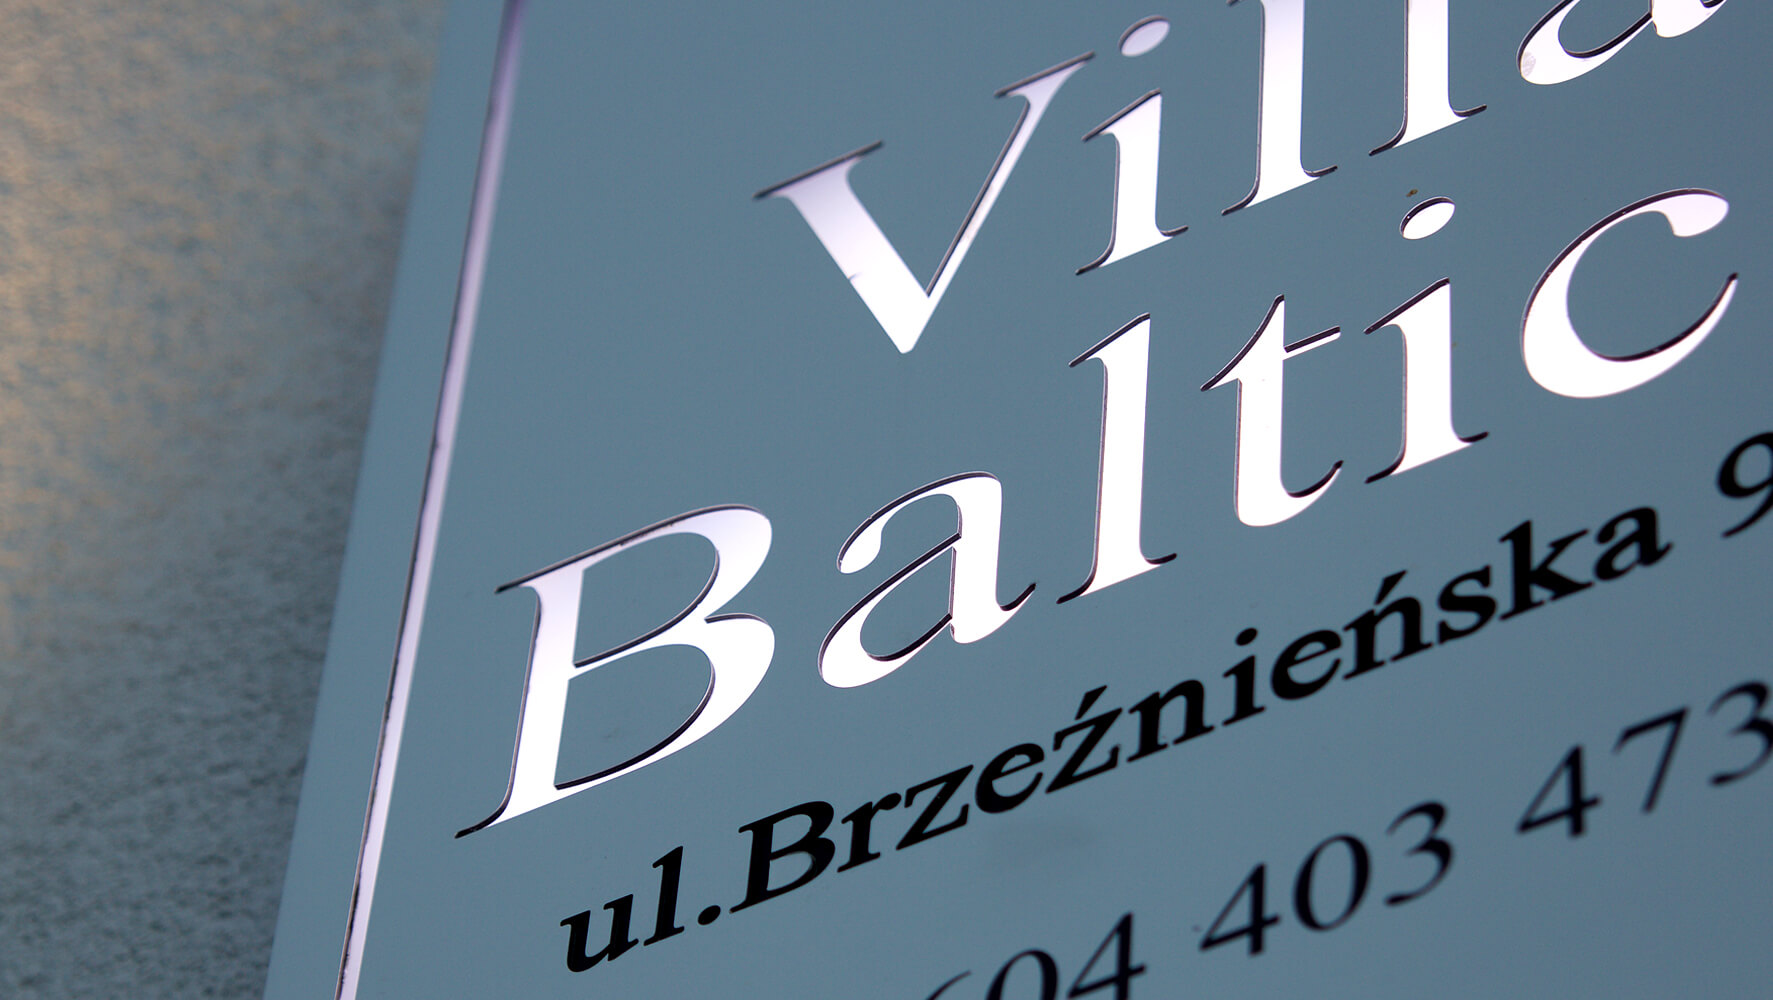 Villa Baltica - Villa Baltica - Firmenschild auf einem Dibondkoffer